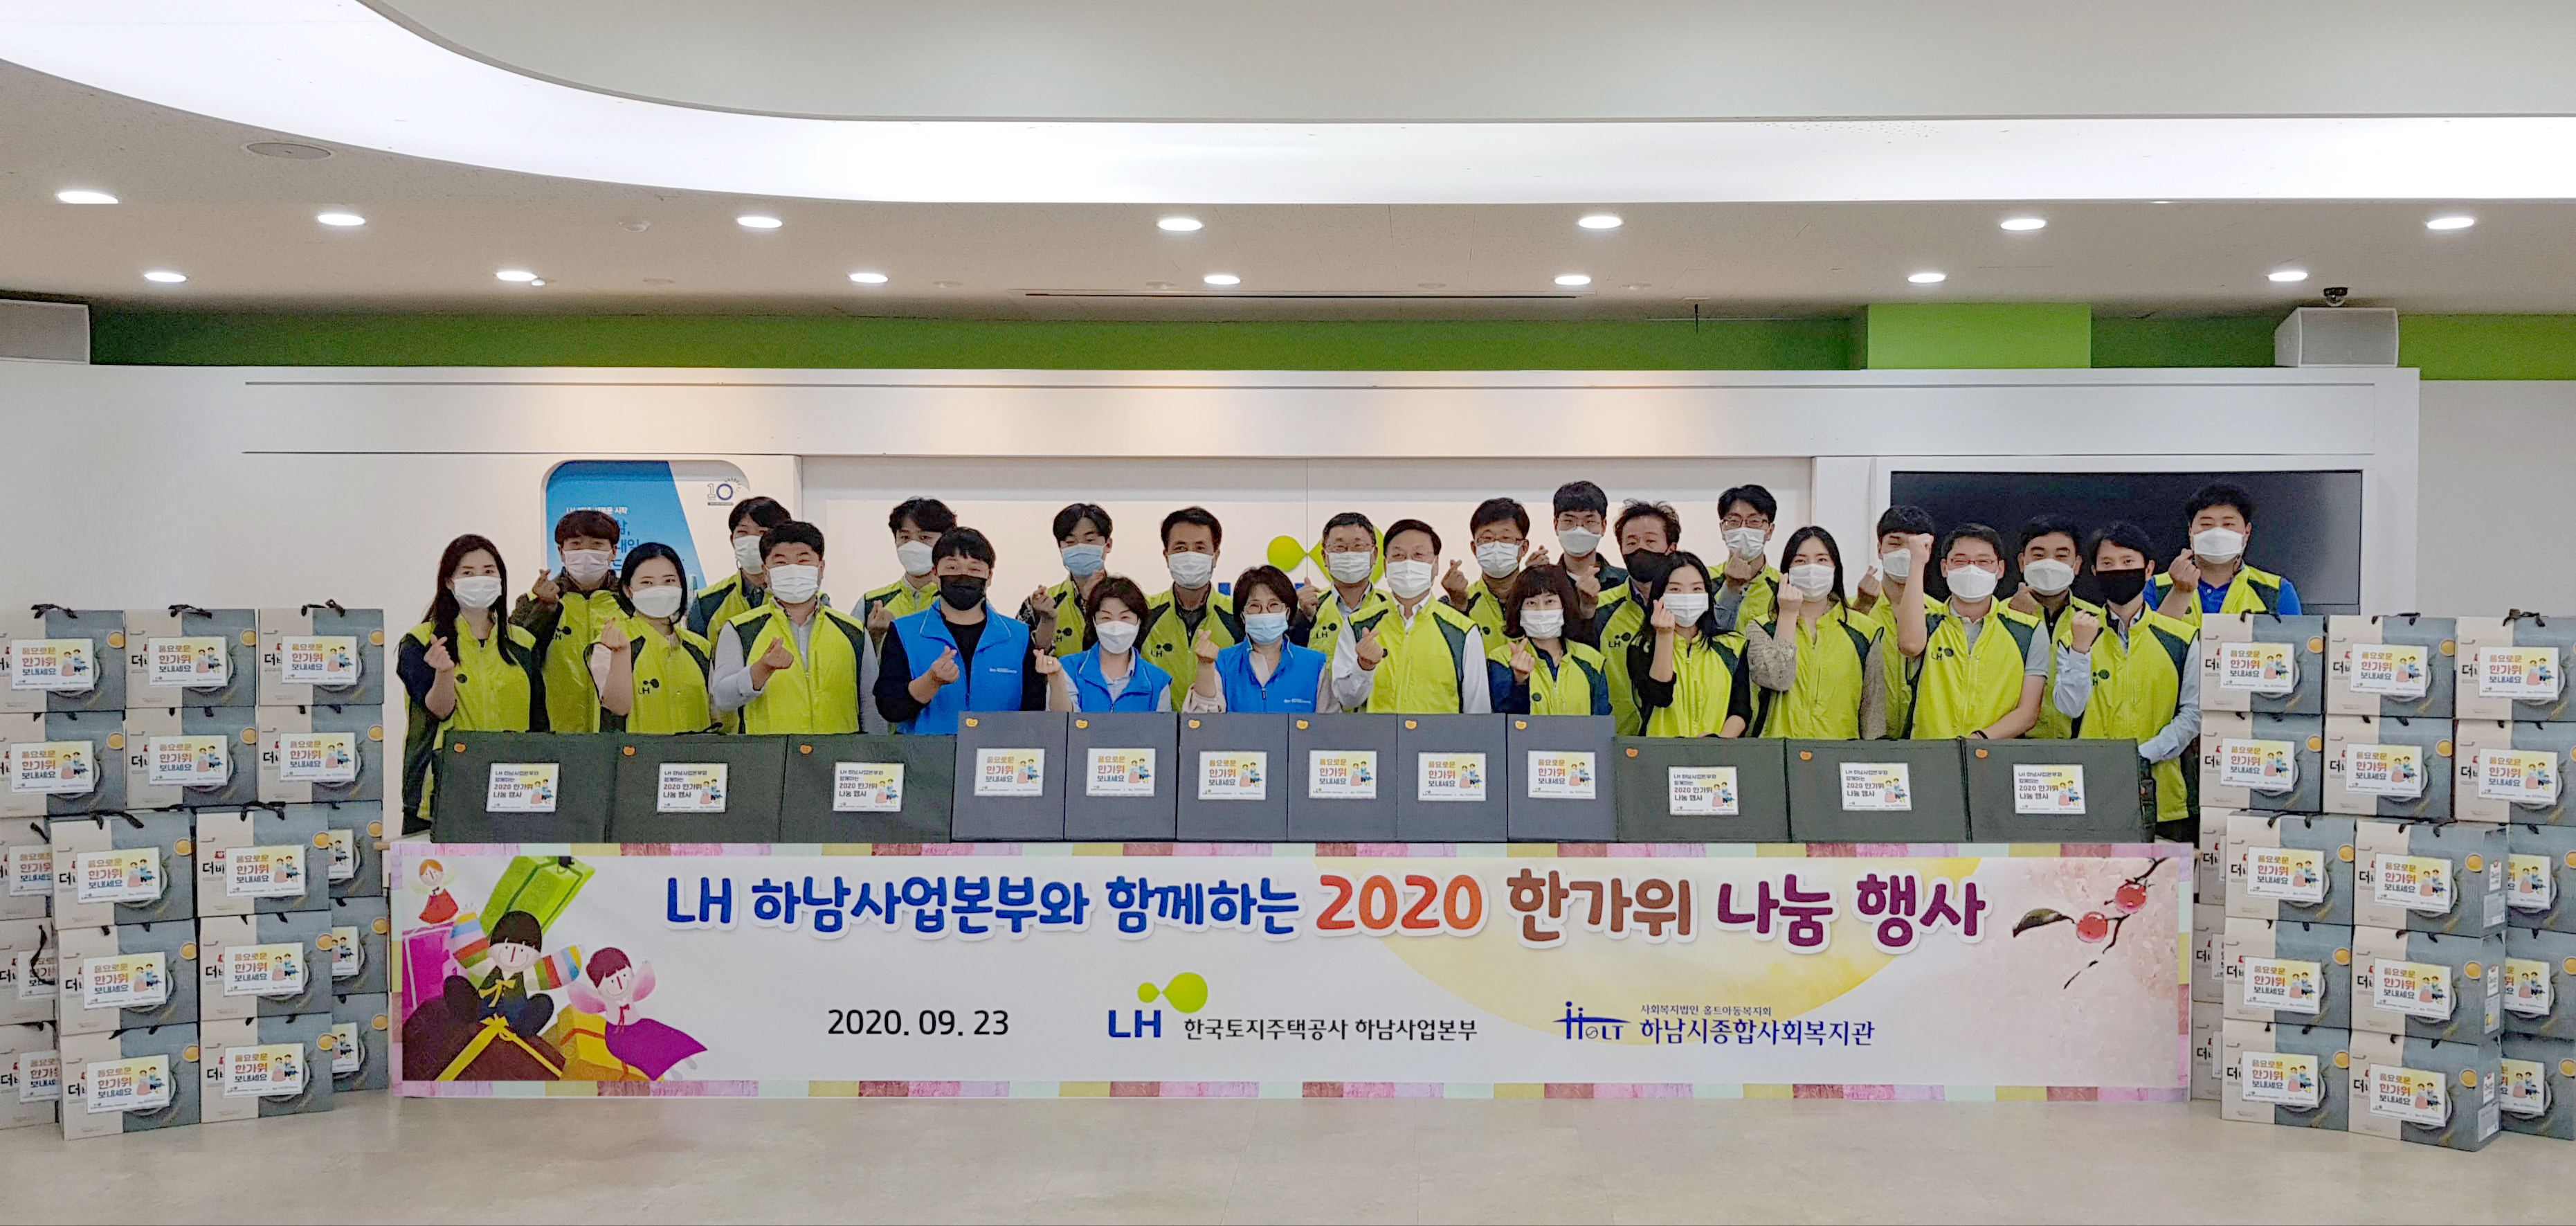 한국토지주택공사 하남사업본부와 함께하는 2020 한가위 나눔 행사